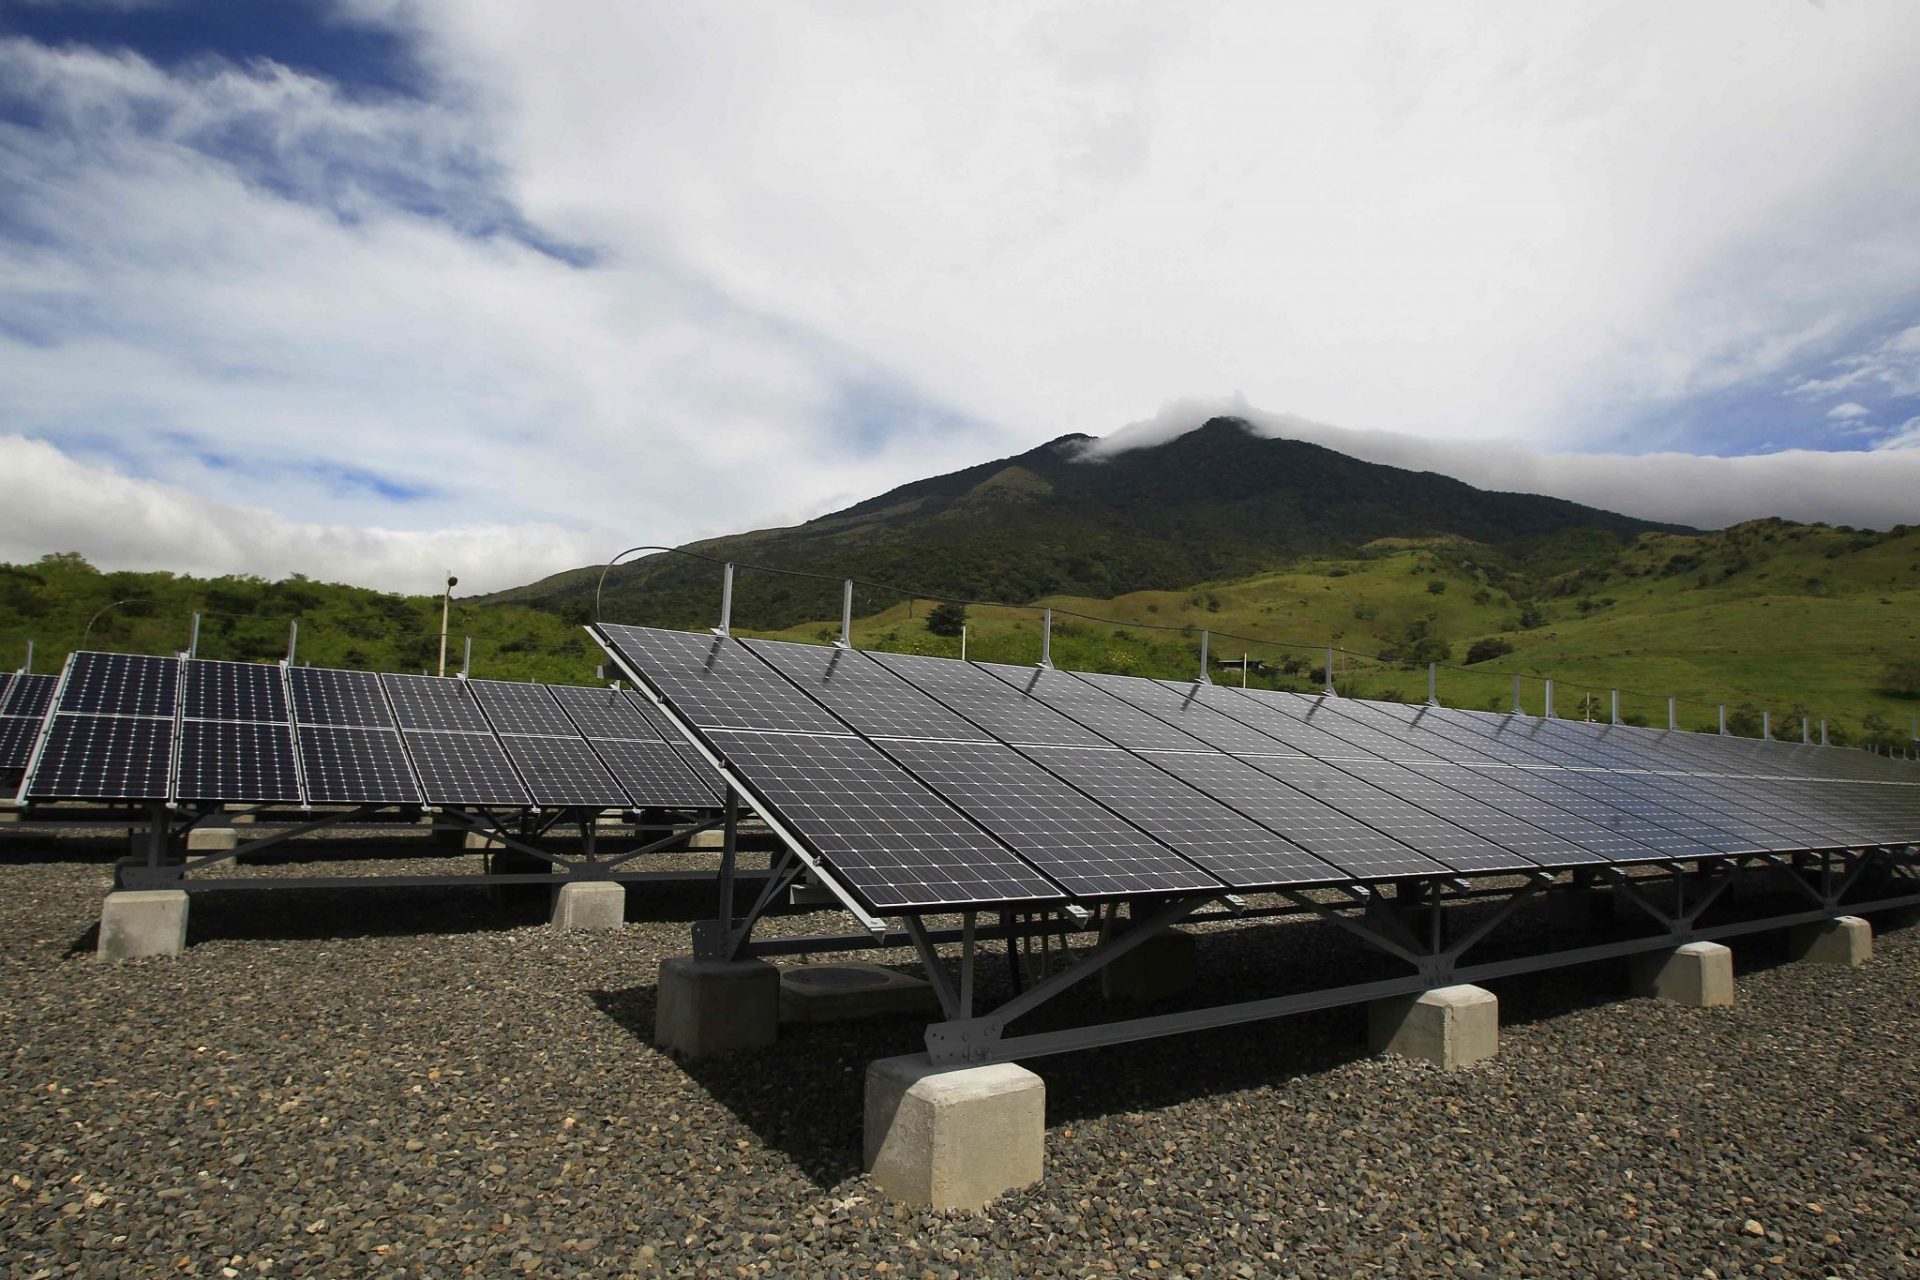 ENERGÍA SOLAR SE ABRE ESPACIO EN CENTROAMÉRICA CON GRAN PLANTA EN COSTA RICA